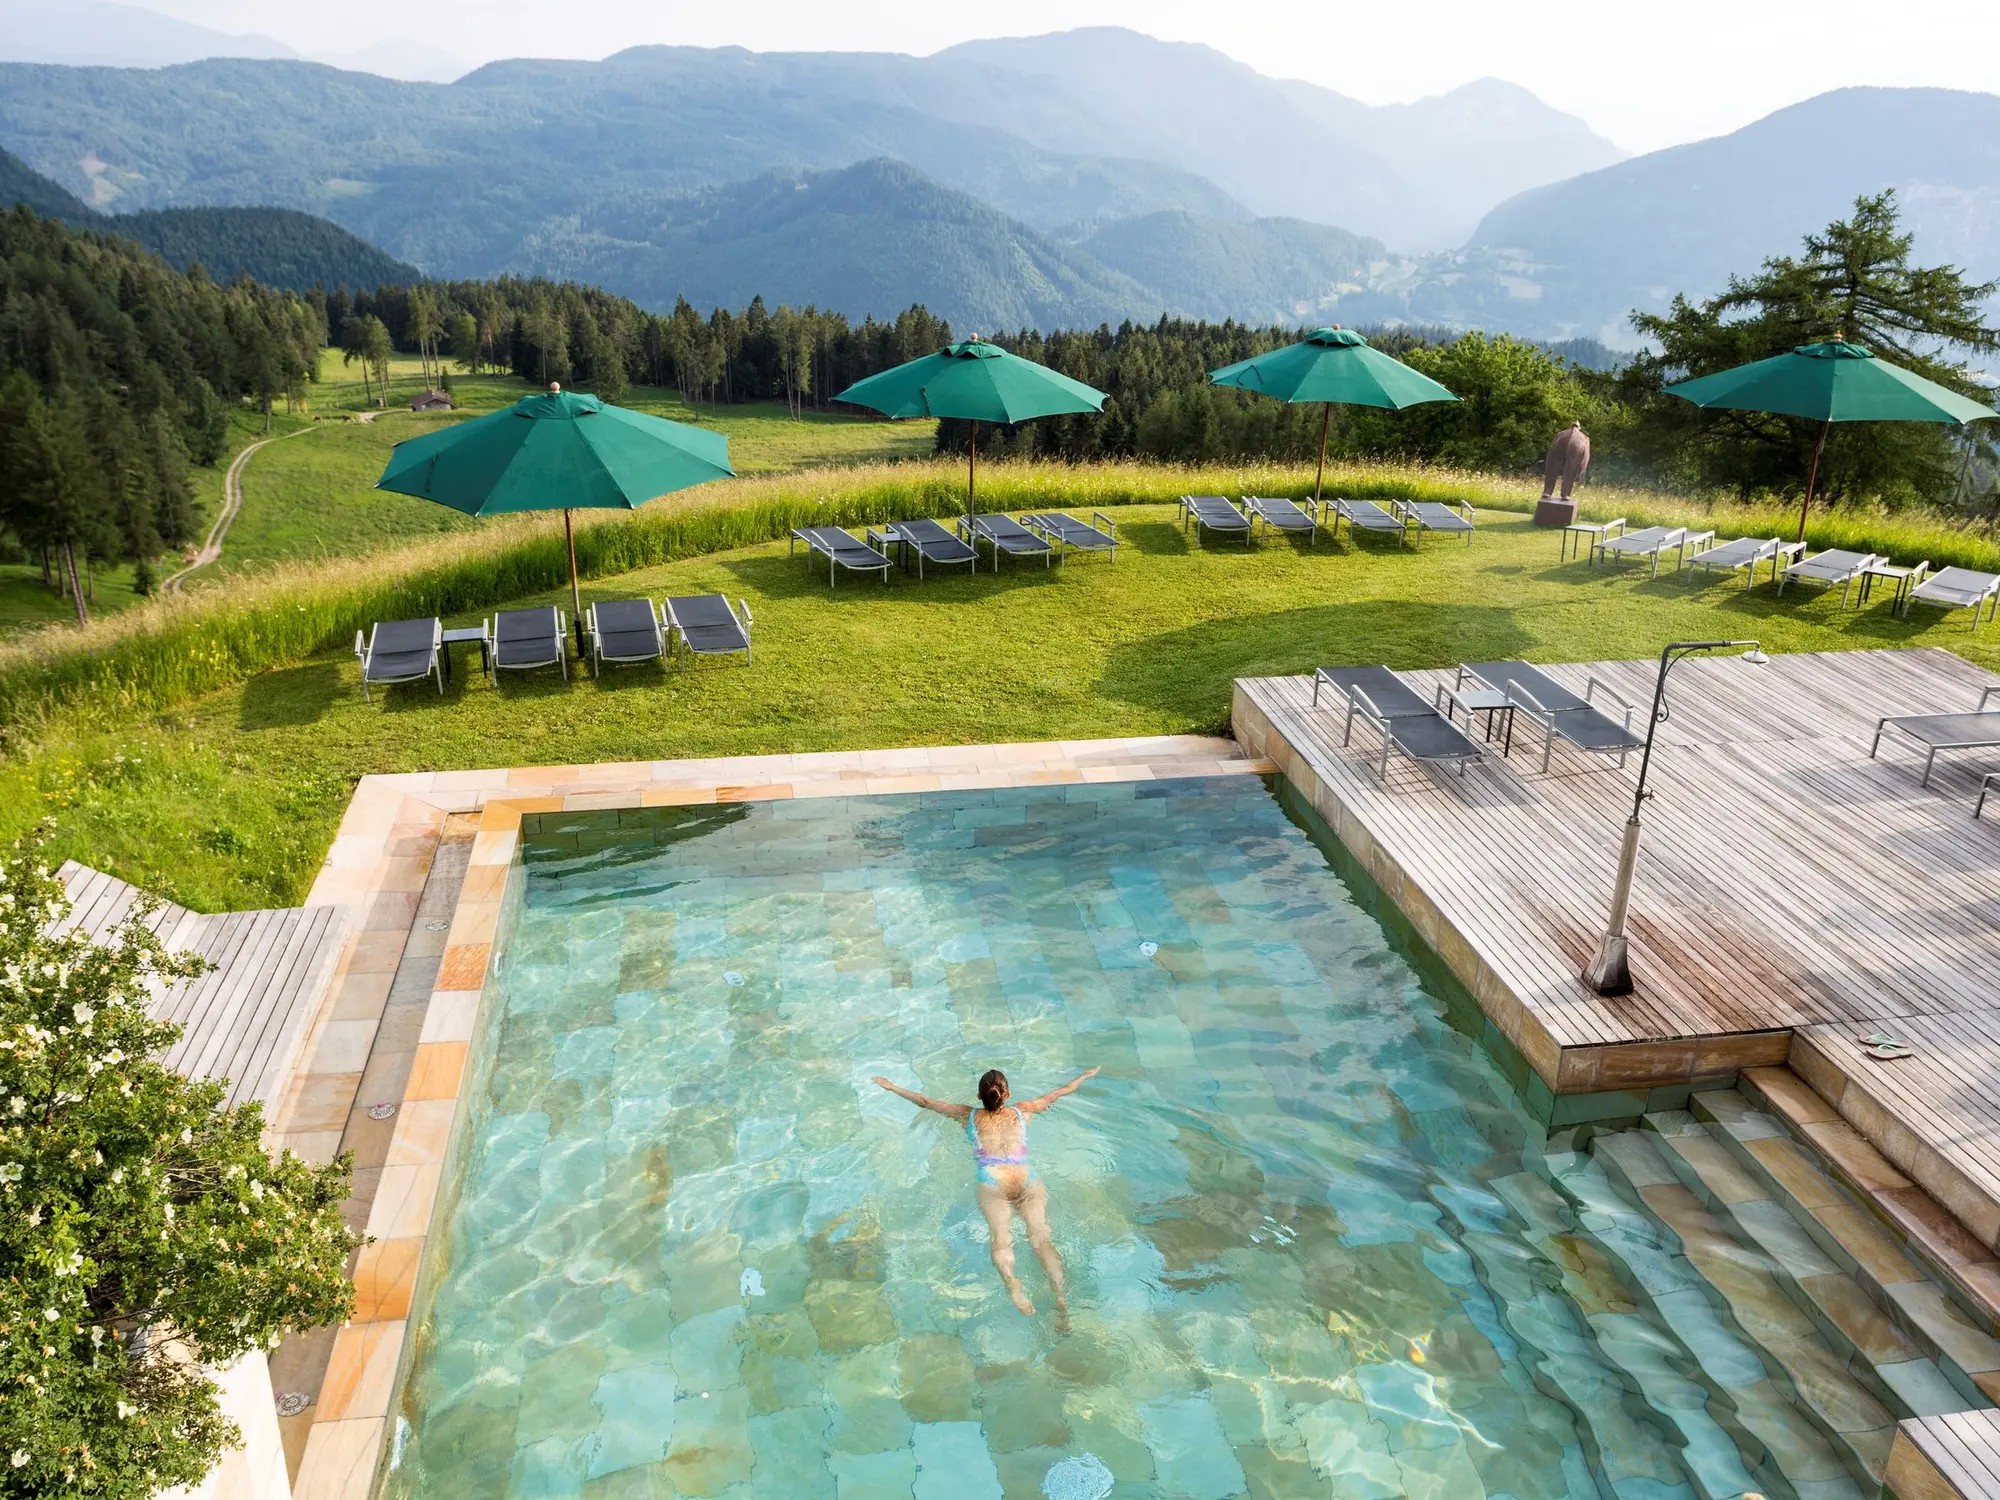 Infinity Pool vom Hotel Der Zirmerhof in Radein, Südtirol (c) Foto Der Zirmerhof